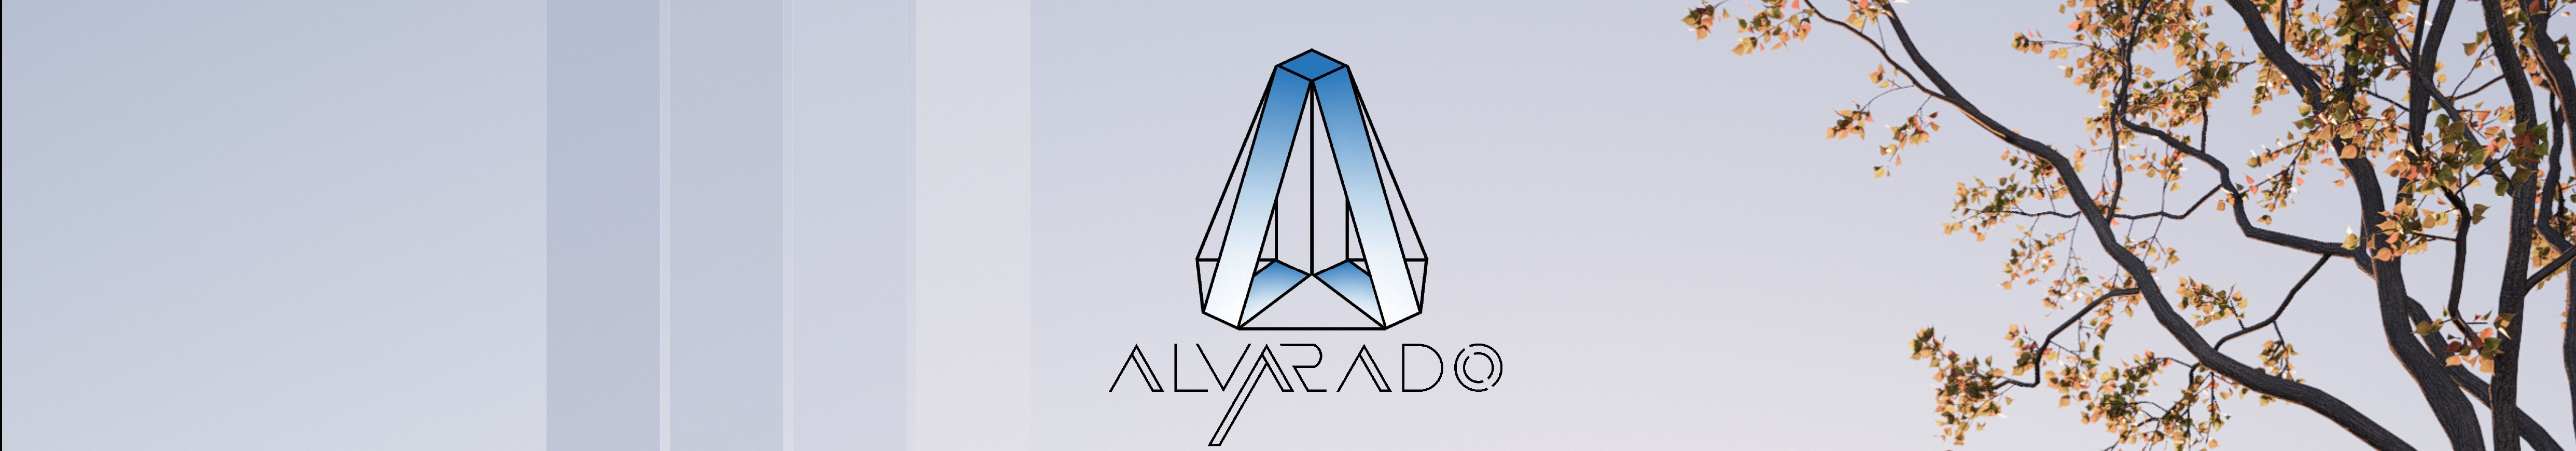 JEFERSON ALVARADO's profile banner